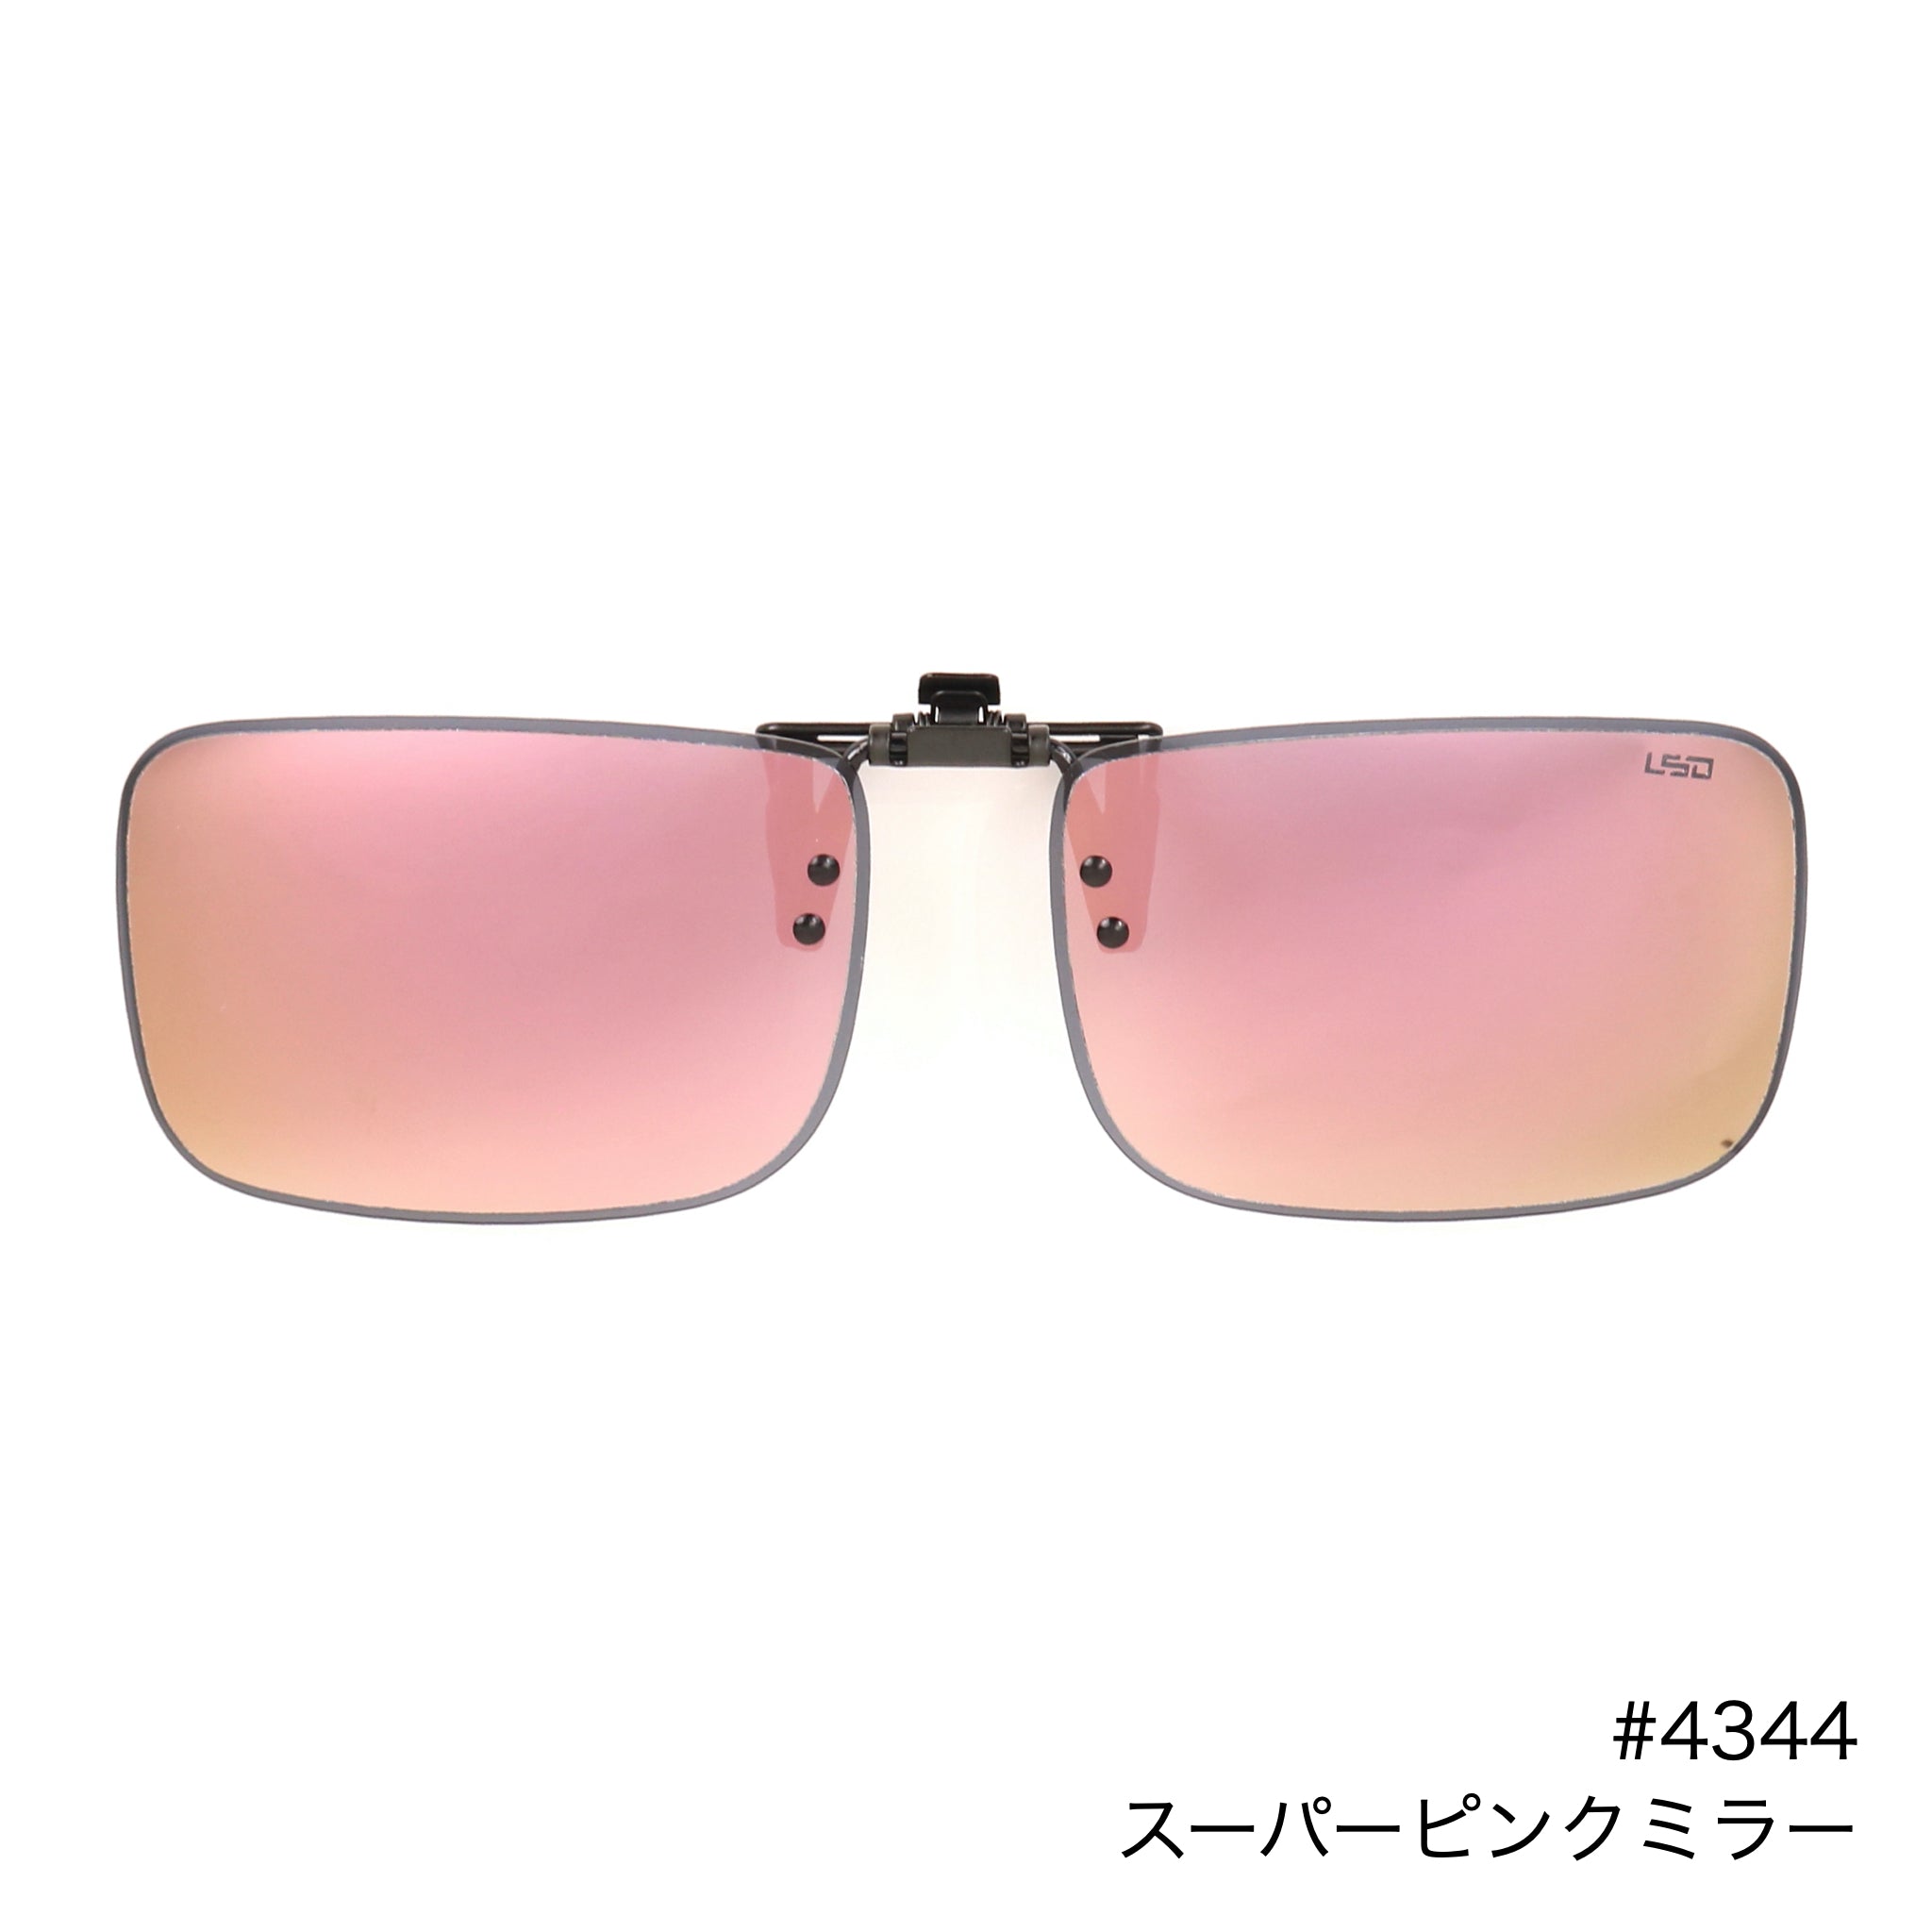 Clip Sunglasses Type5